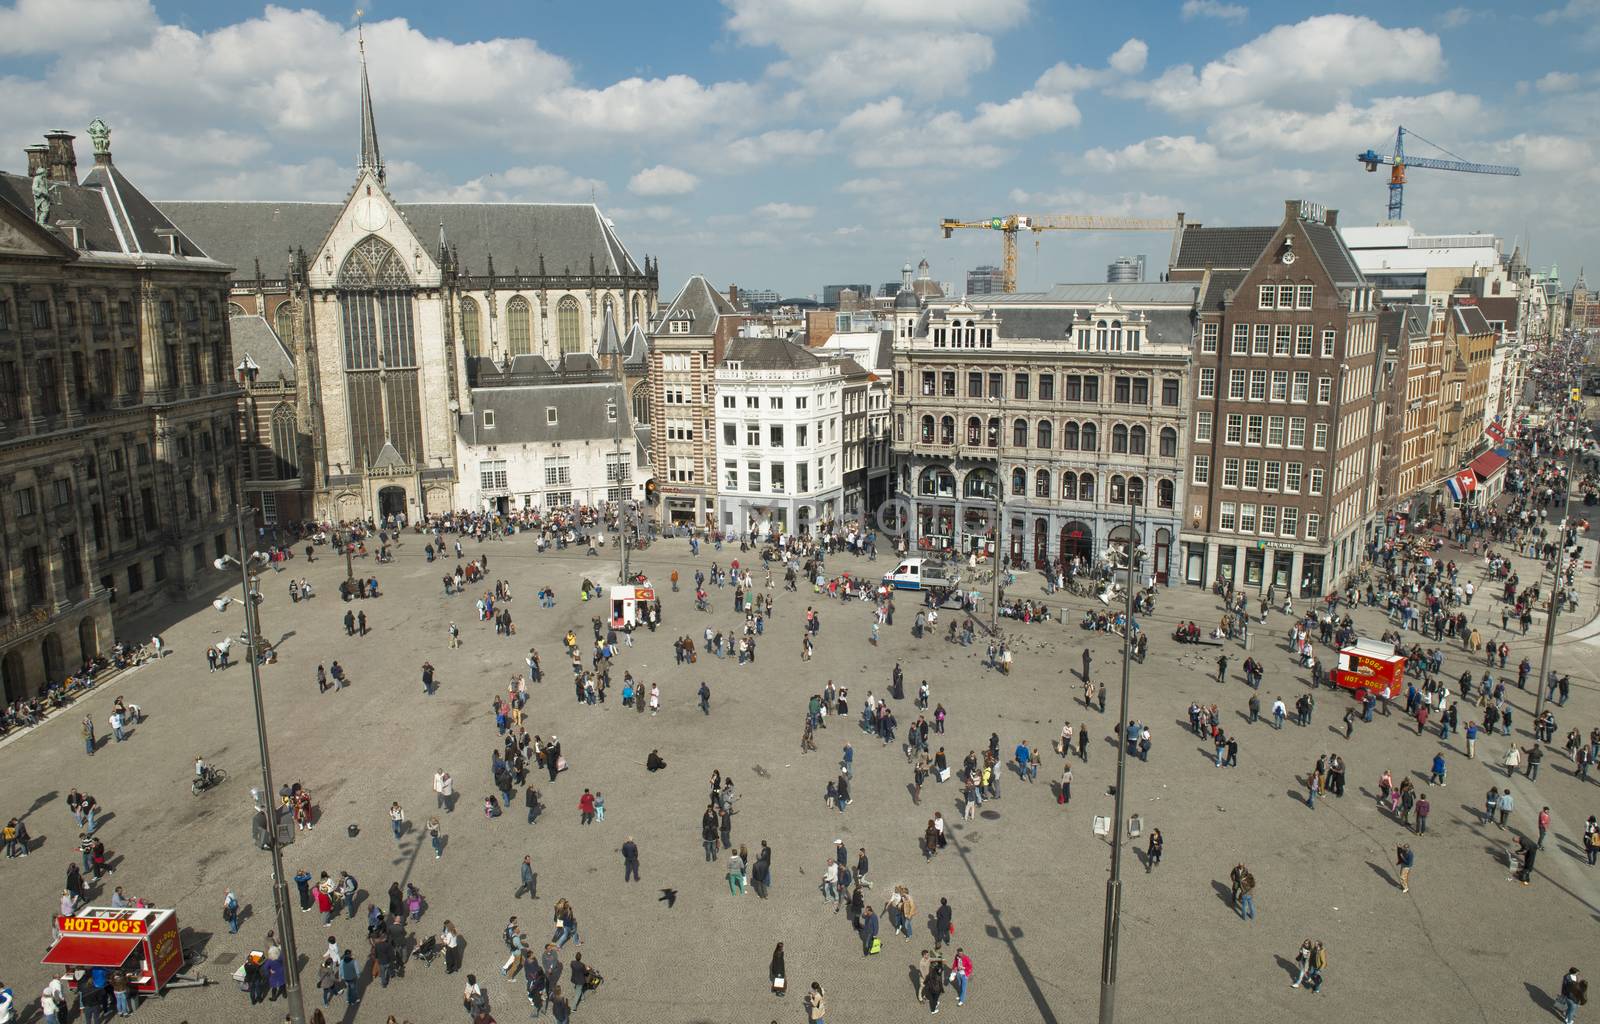 Dam Square in Amsterdam by Alenmax